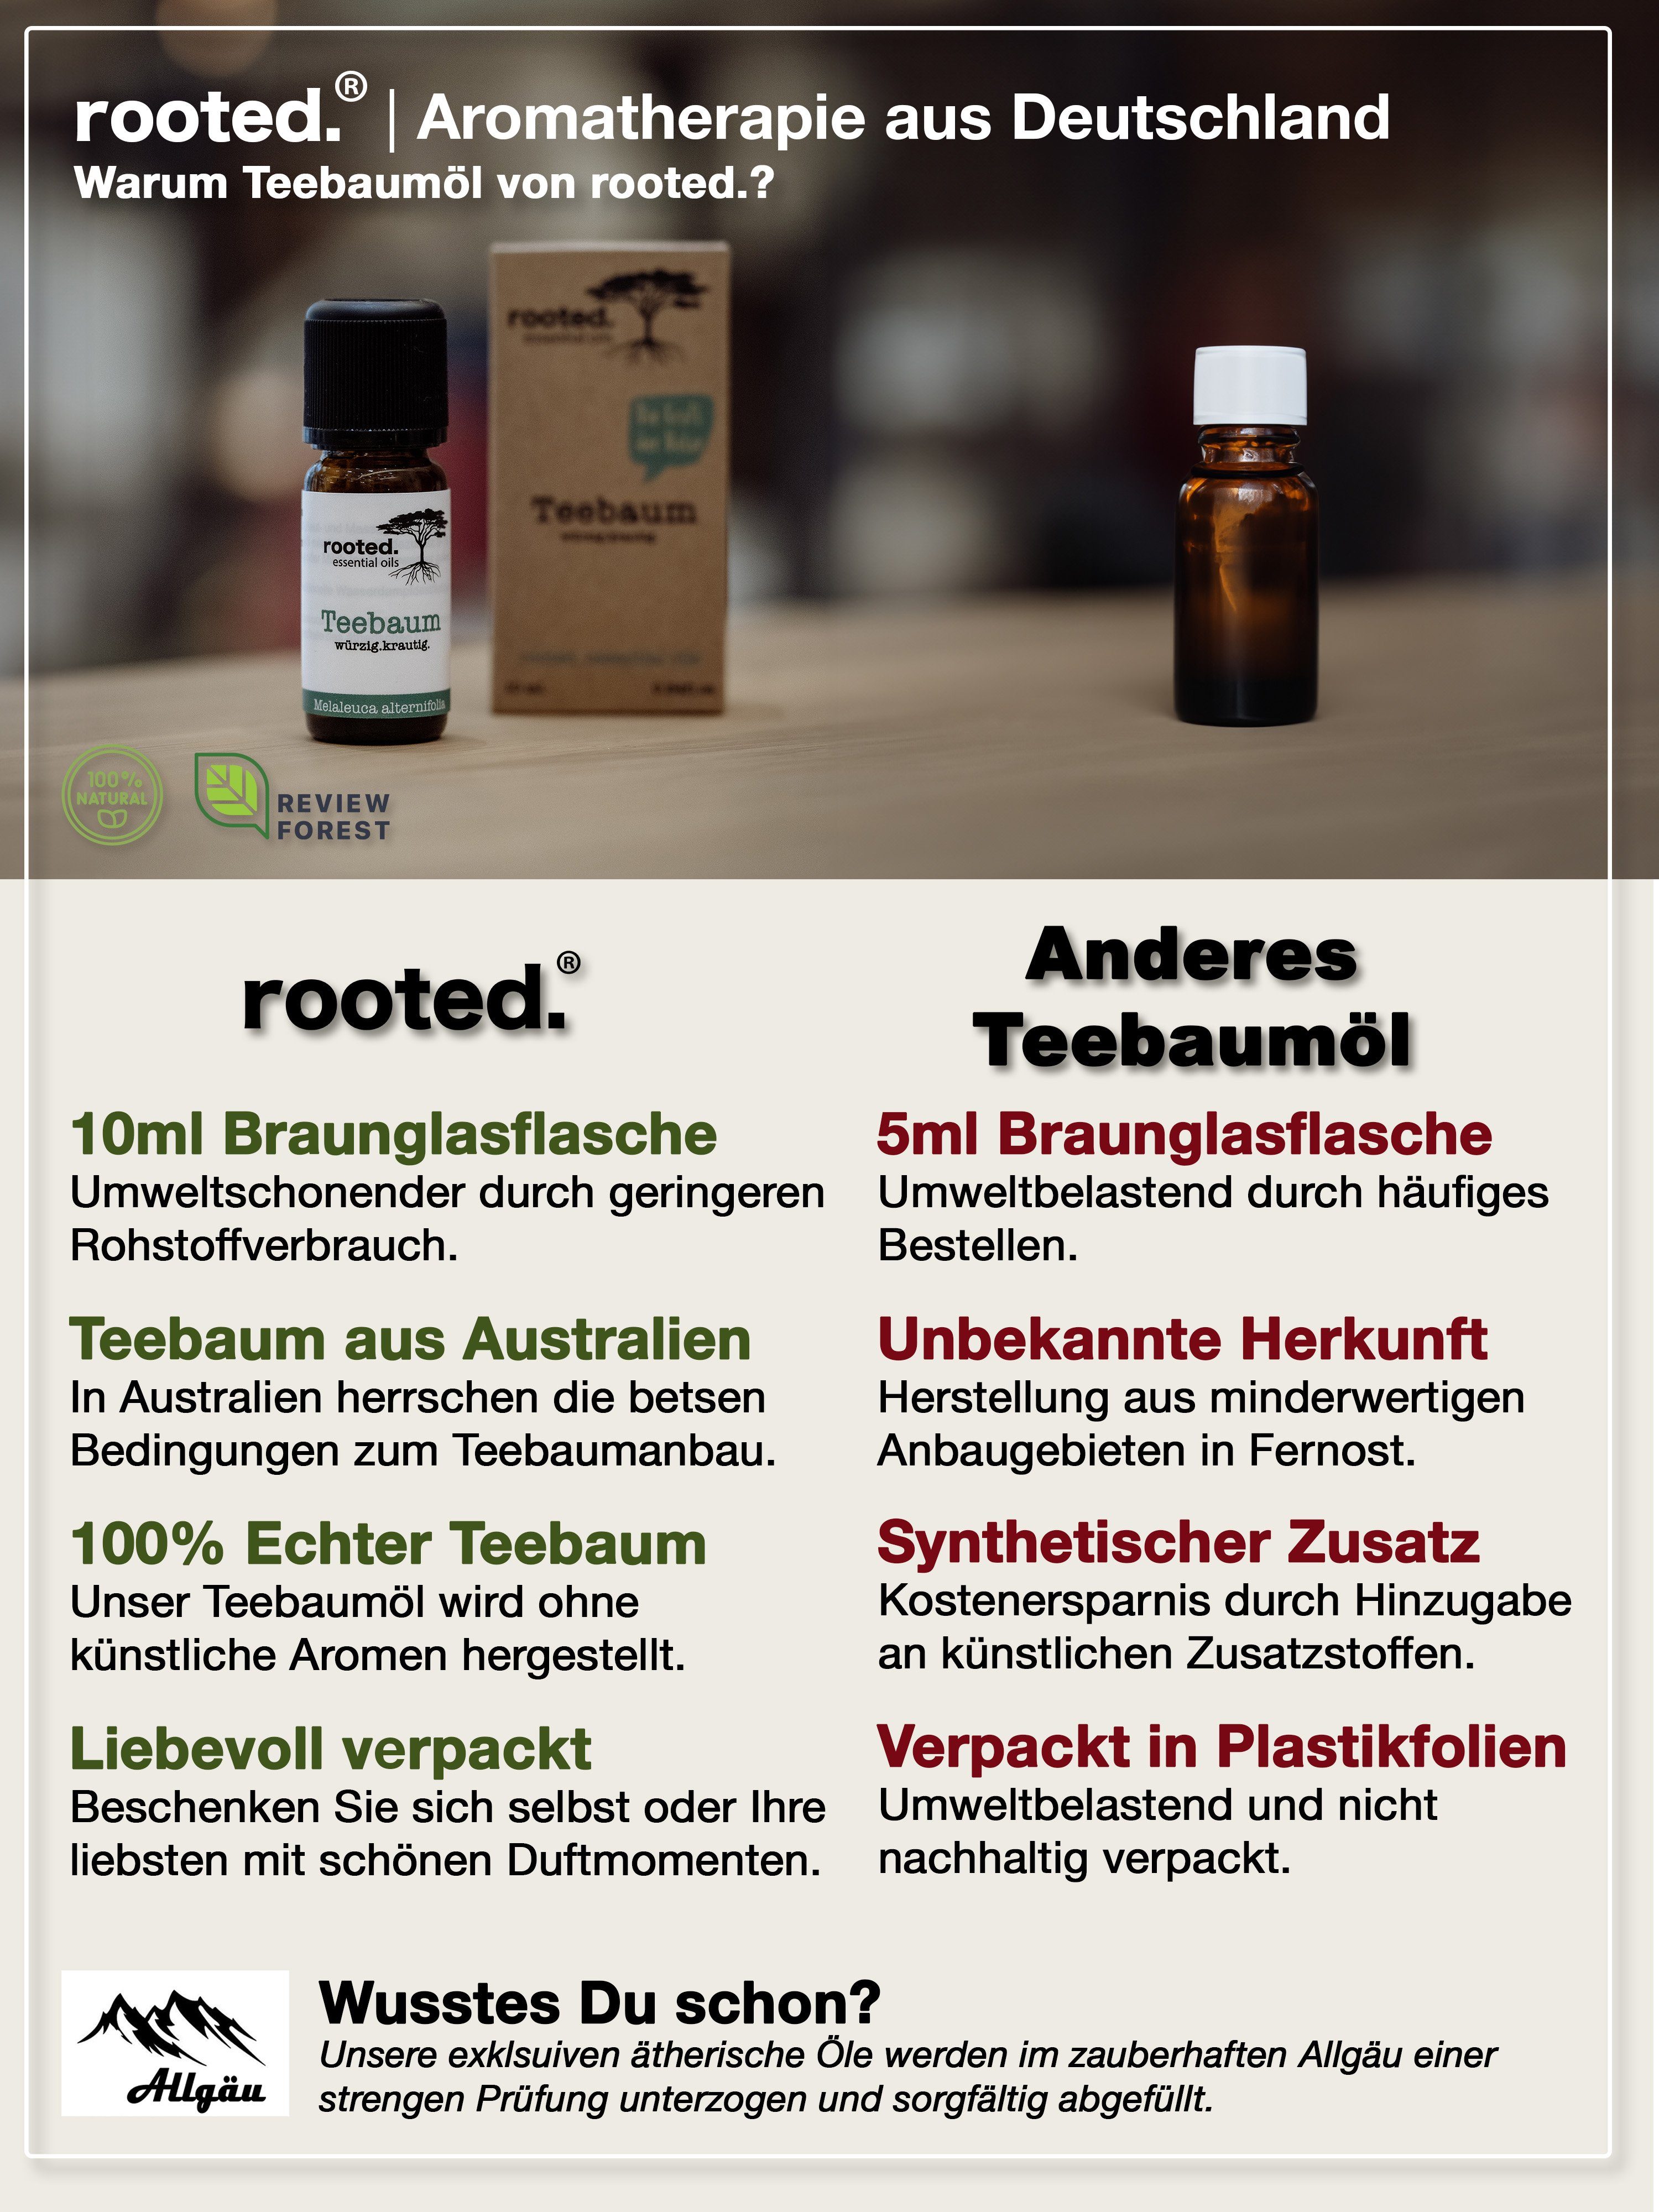 rooted. Körperöl Melaleuca ätherisches rooted.®, 10ml alternifolia Teebaumöl